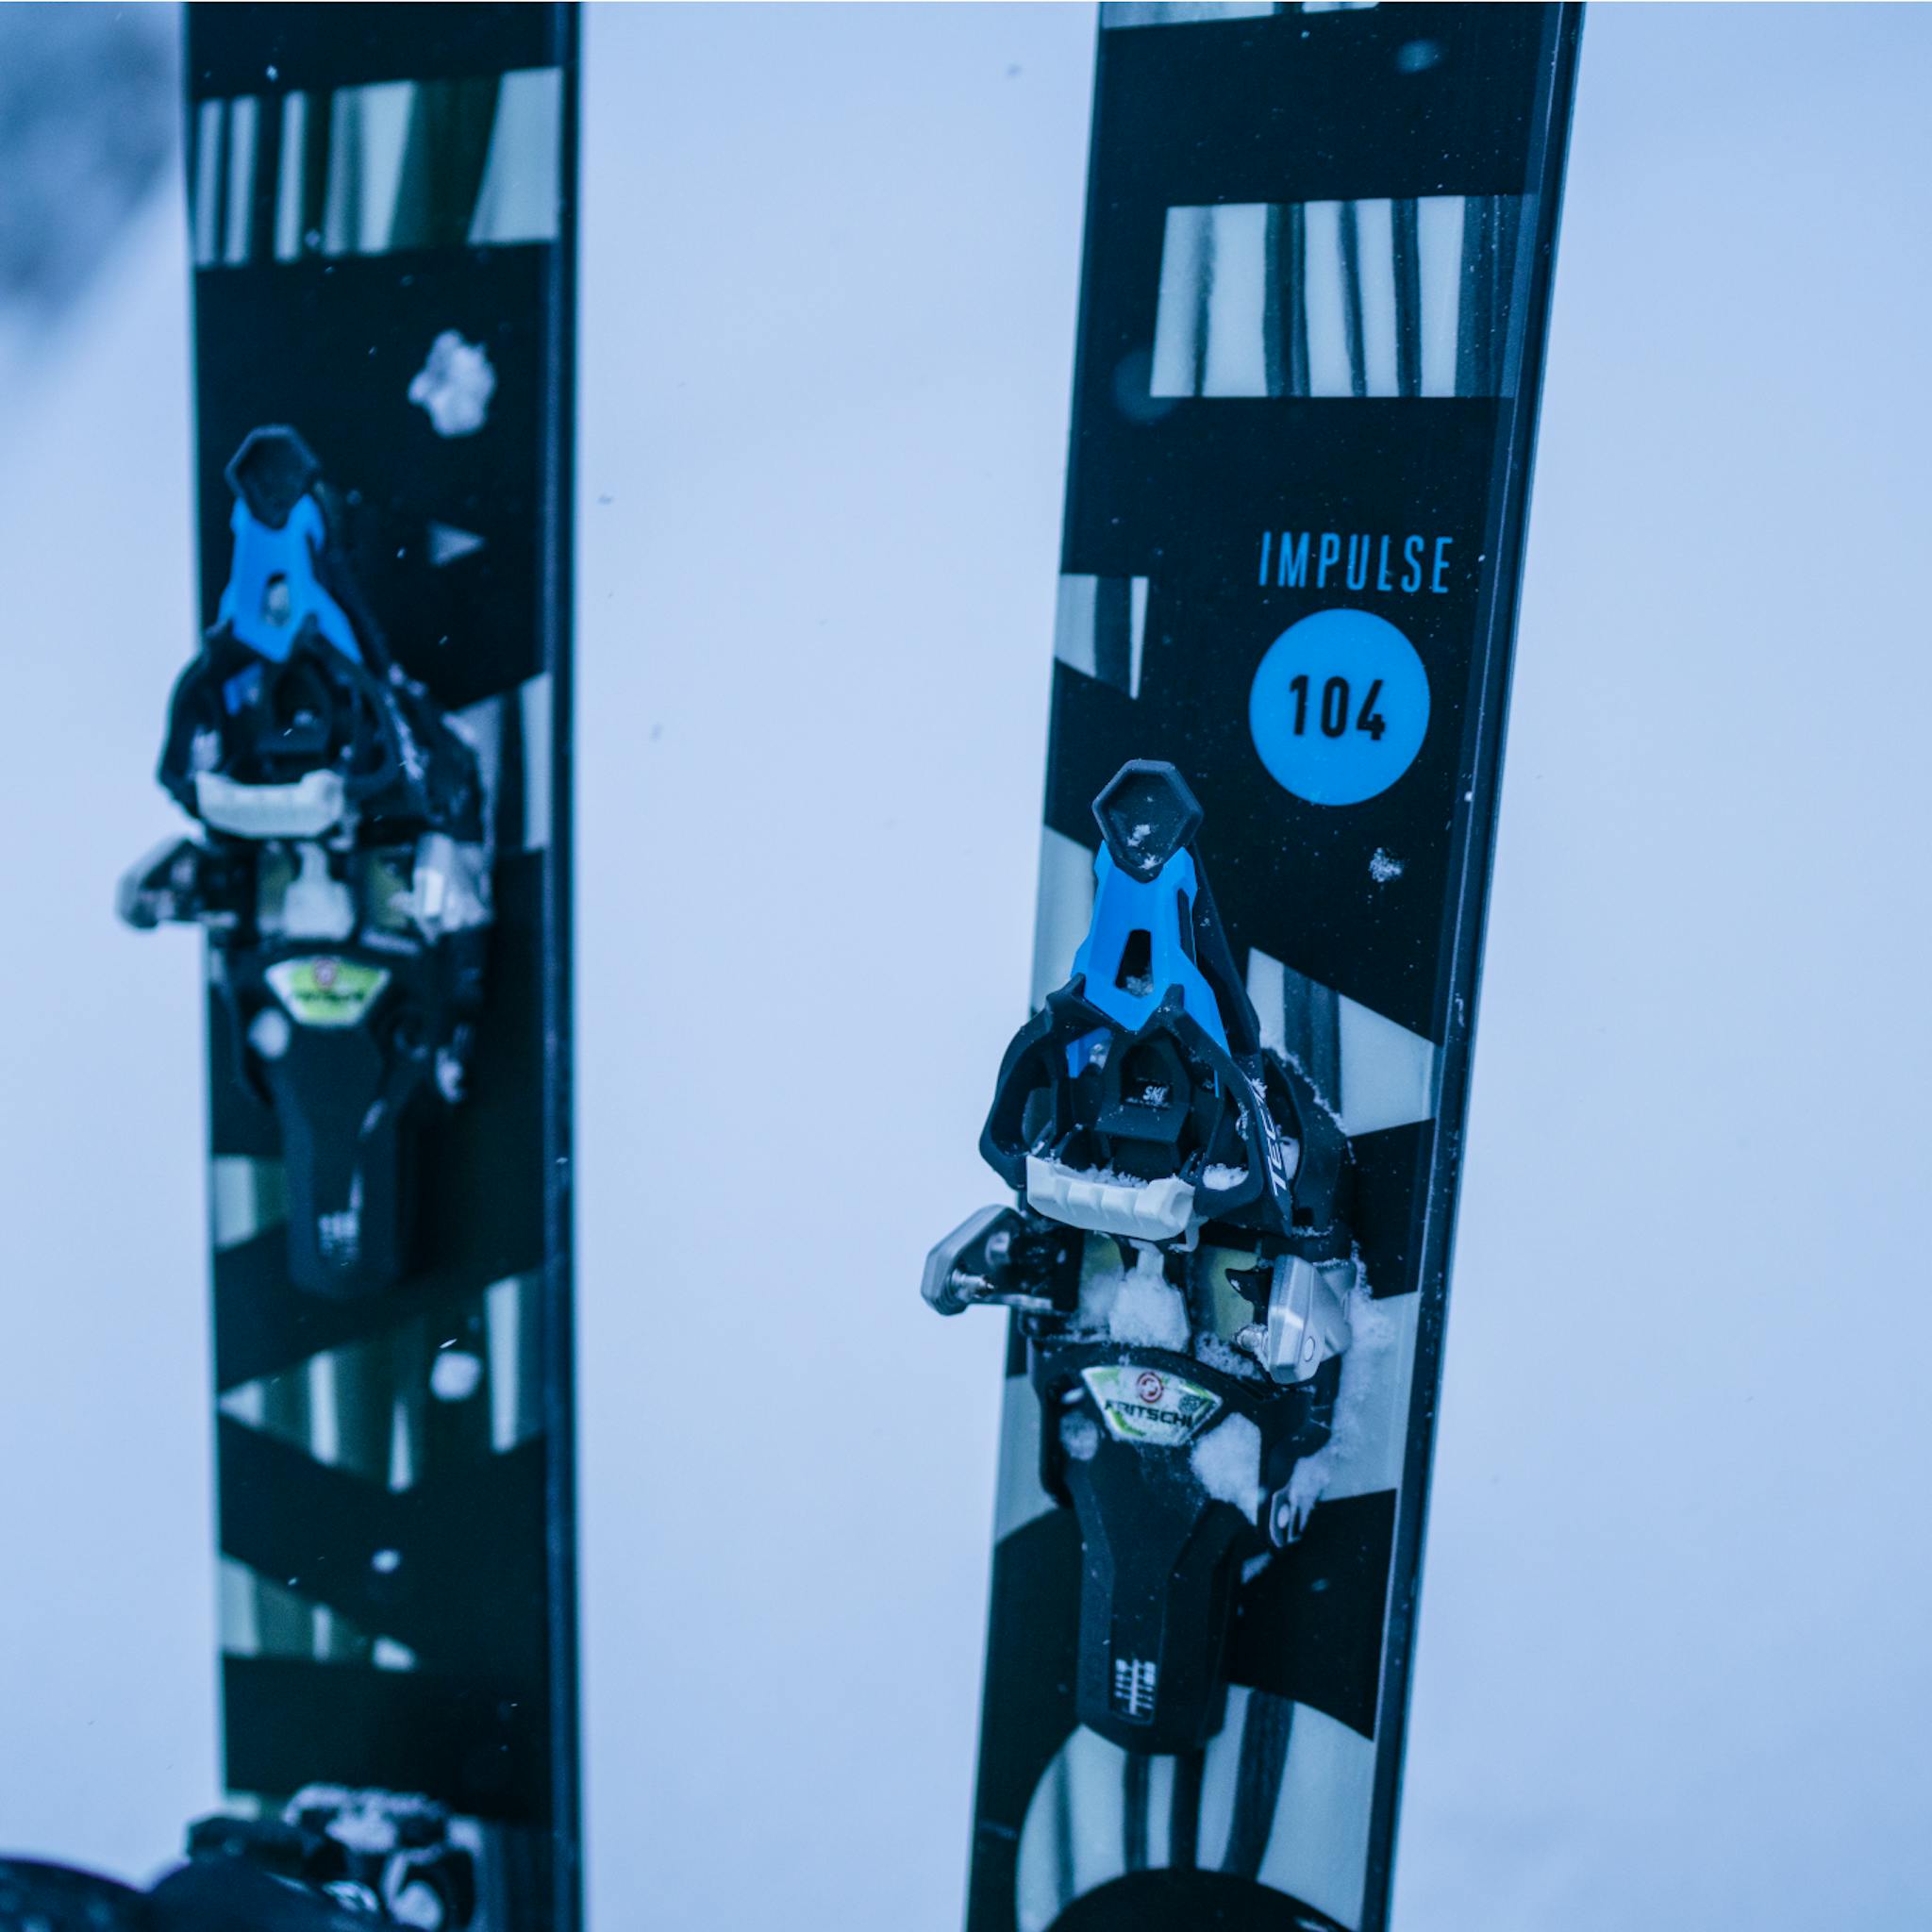 Bindings on the Impulse 104 skis.